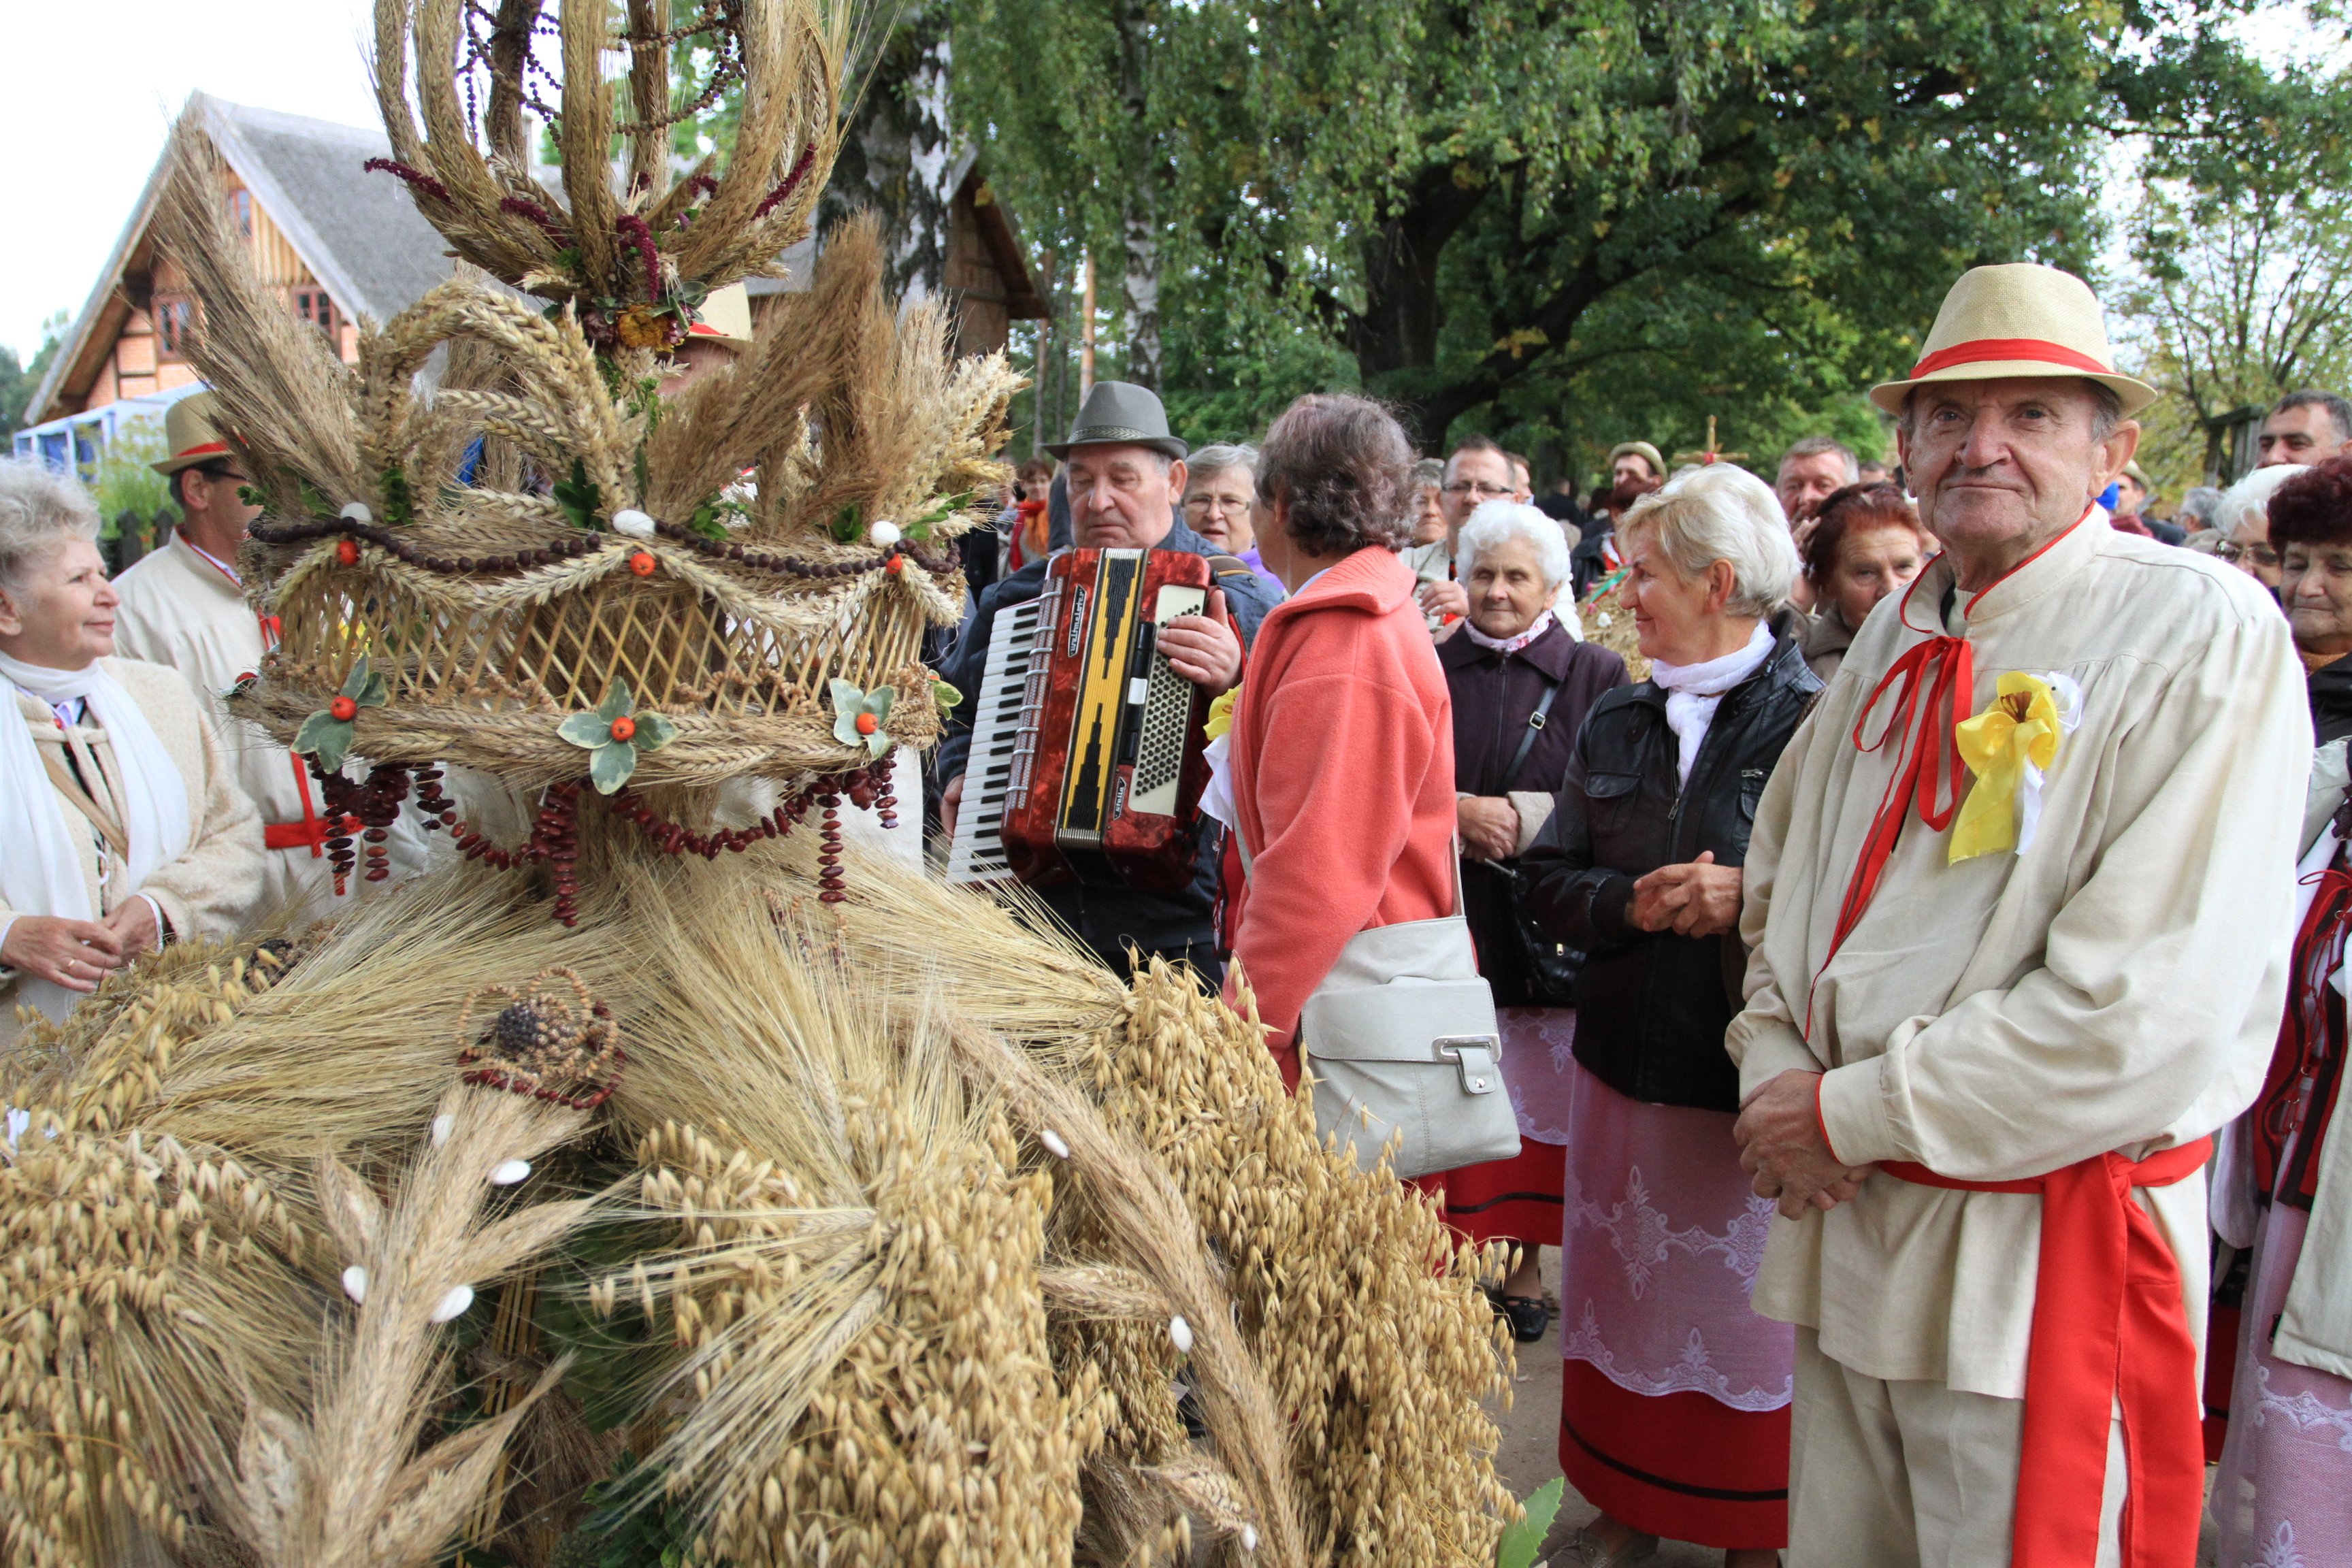 W niedzielę, 17 września o godz. 11.30 rozpoczną się największe uroczystości dożynkowe w województwie warmińsko-mazurskim